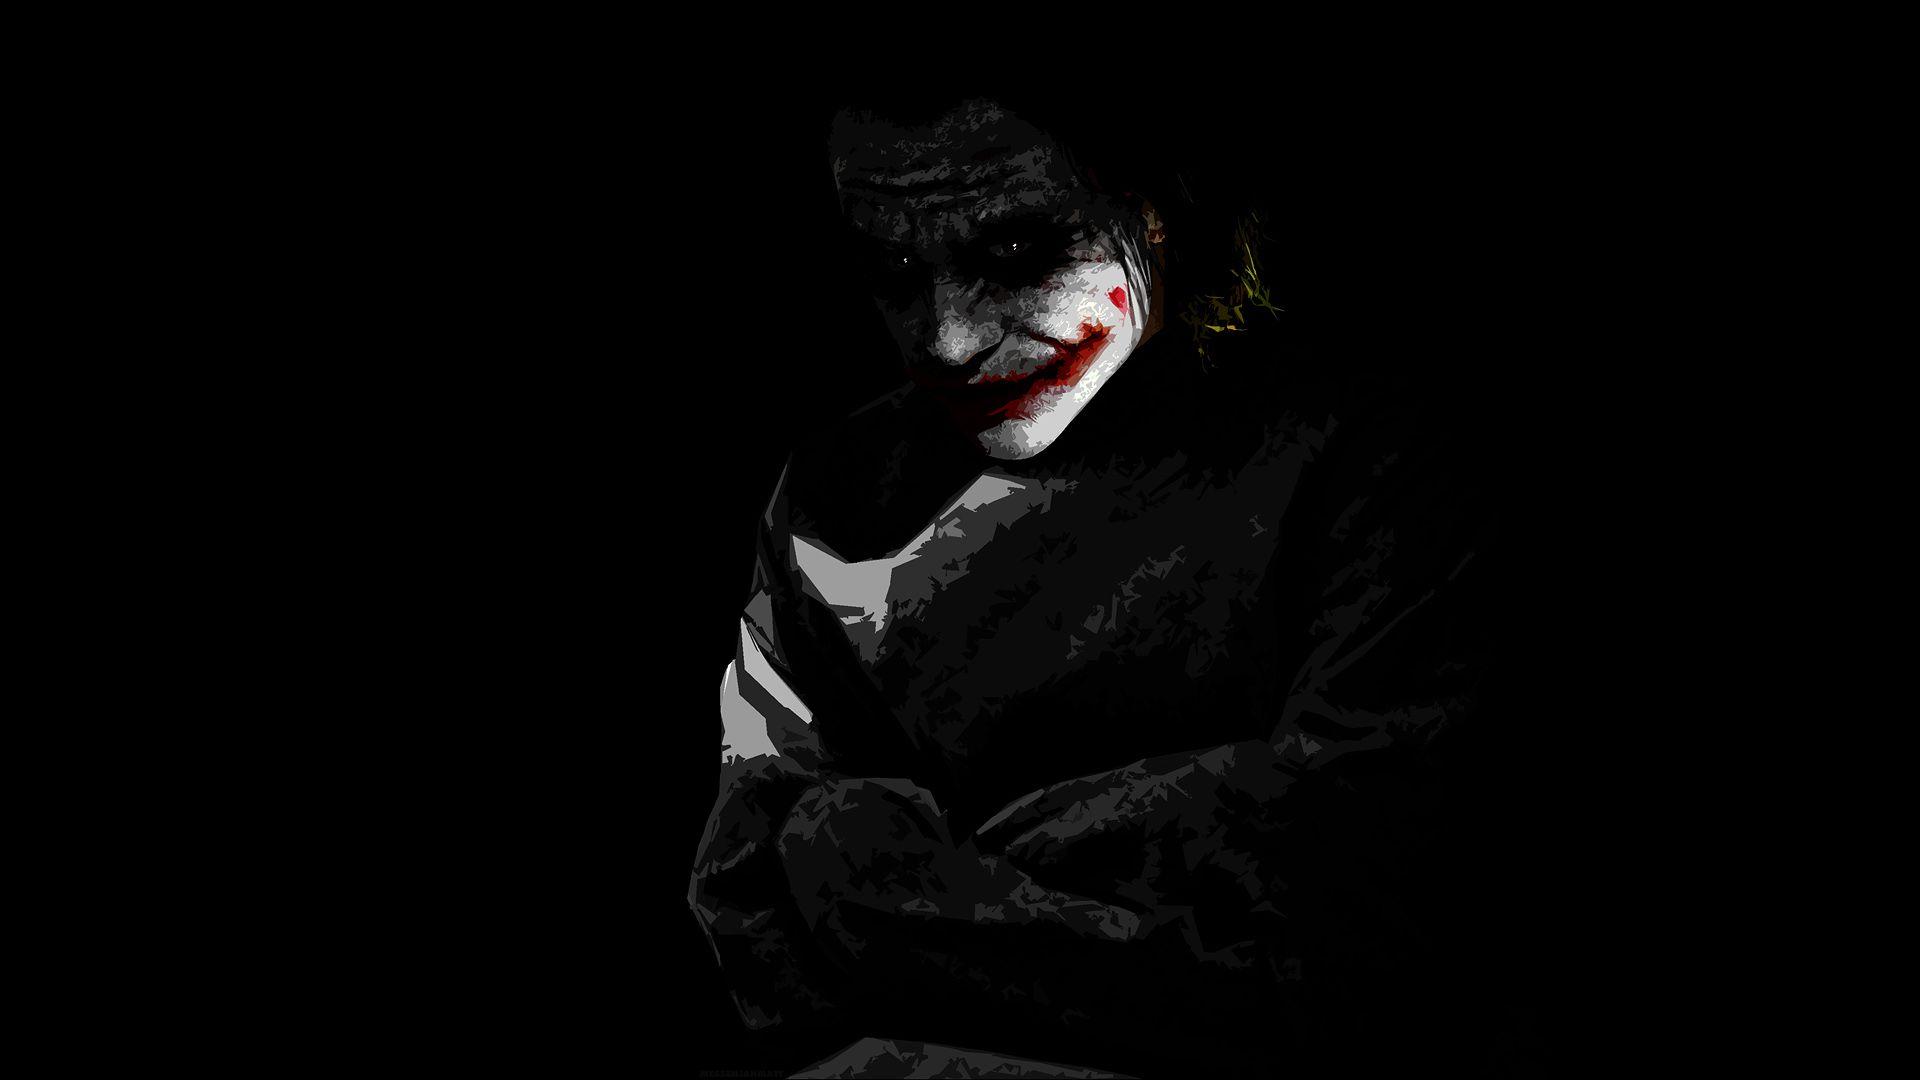 35 Gambar Joker Wallpaper Hd Black and White terbaru 2020